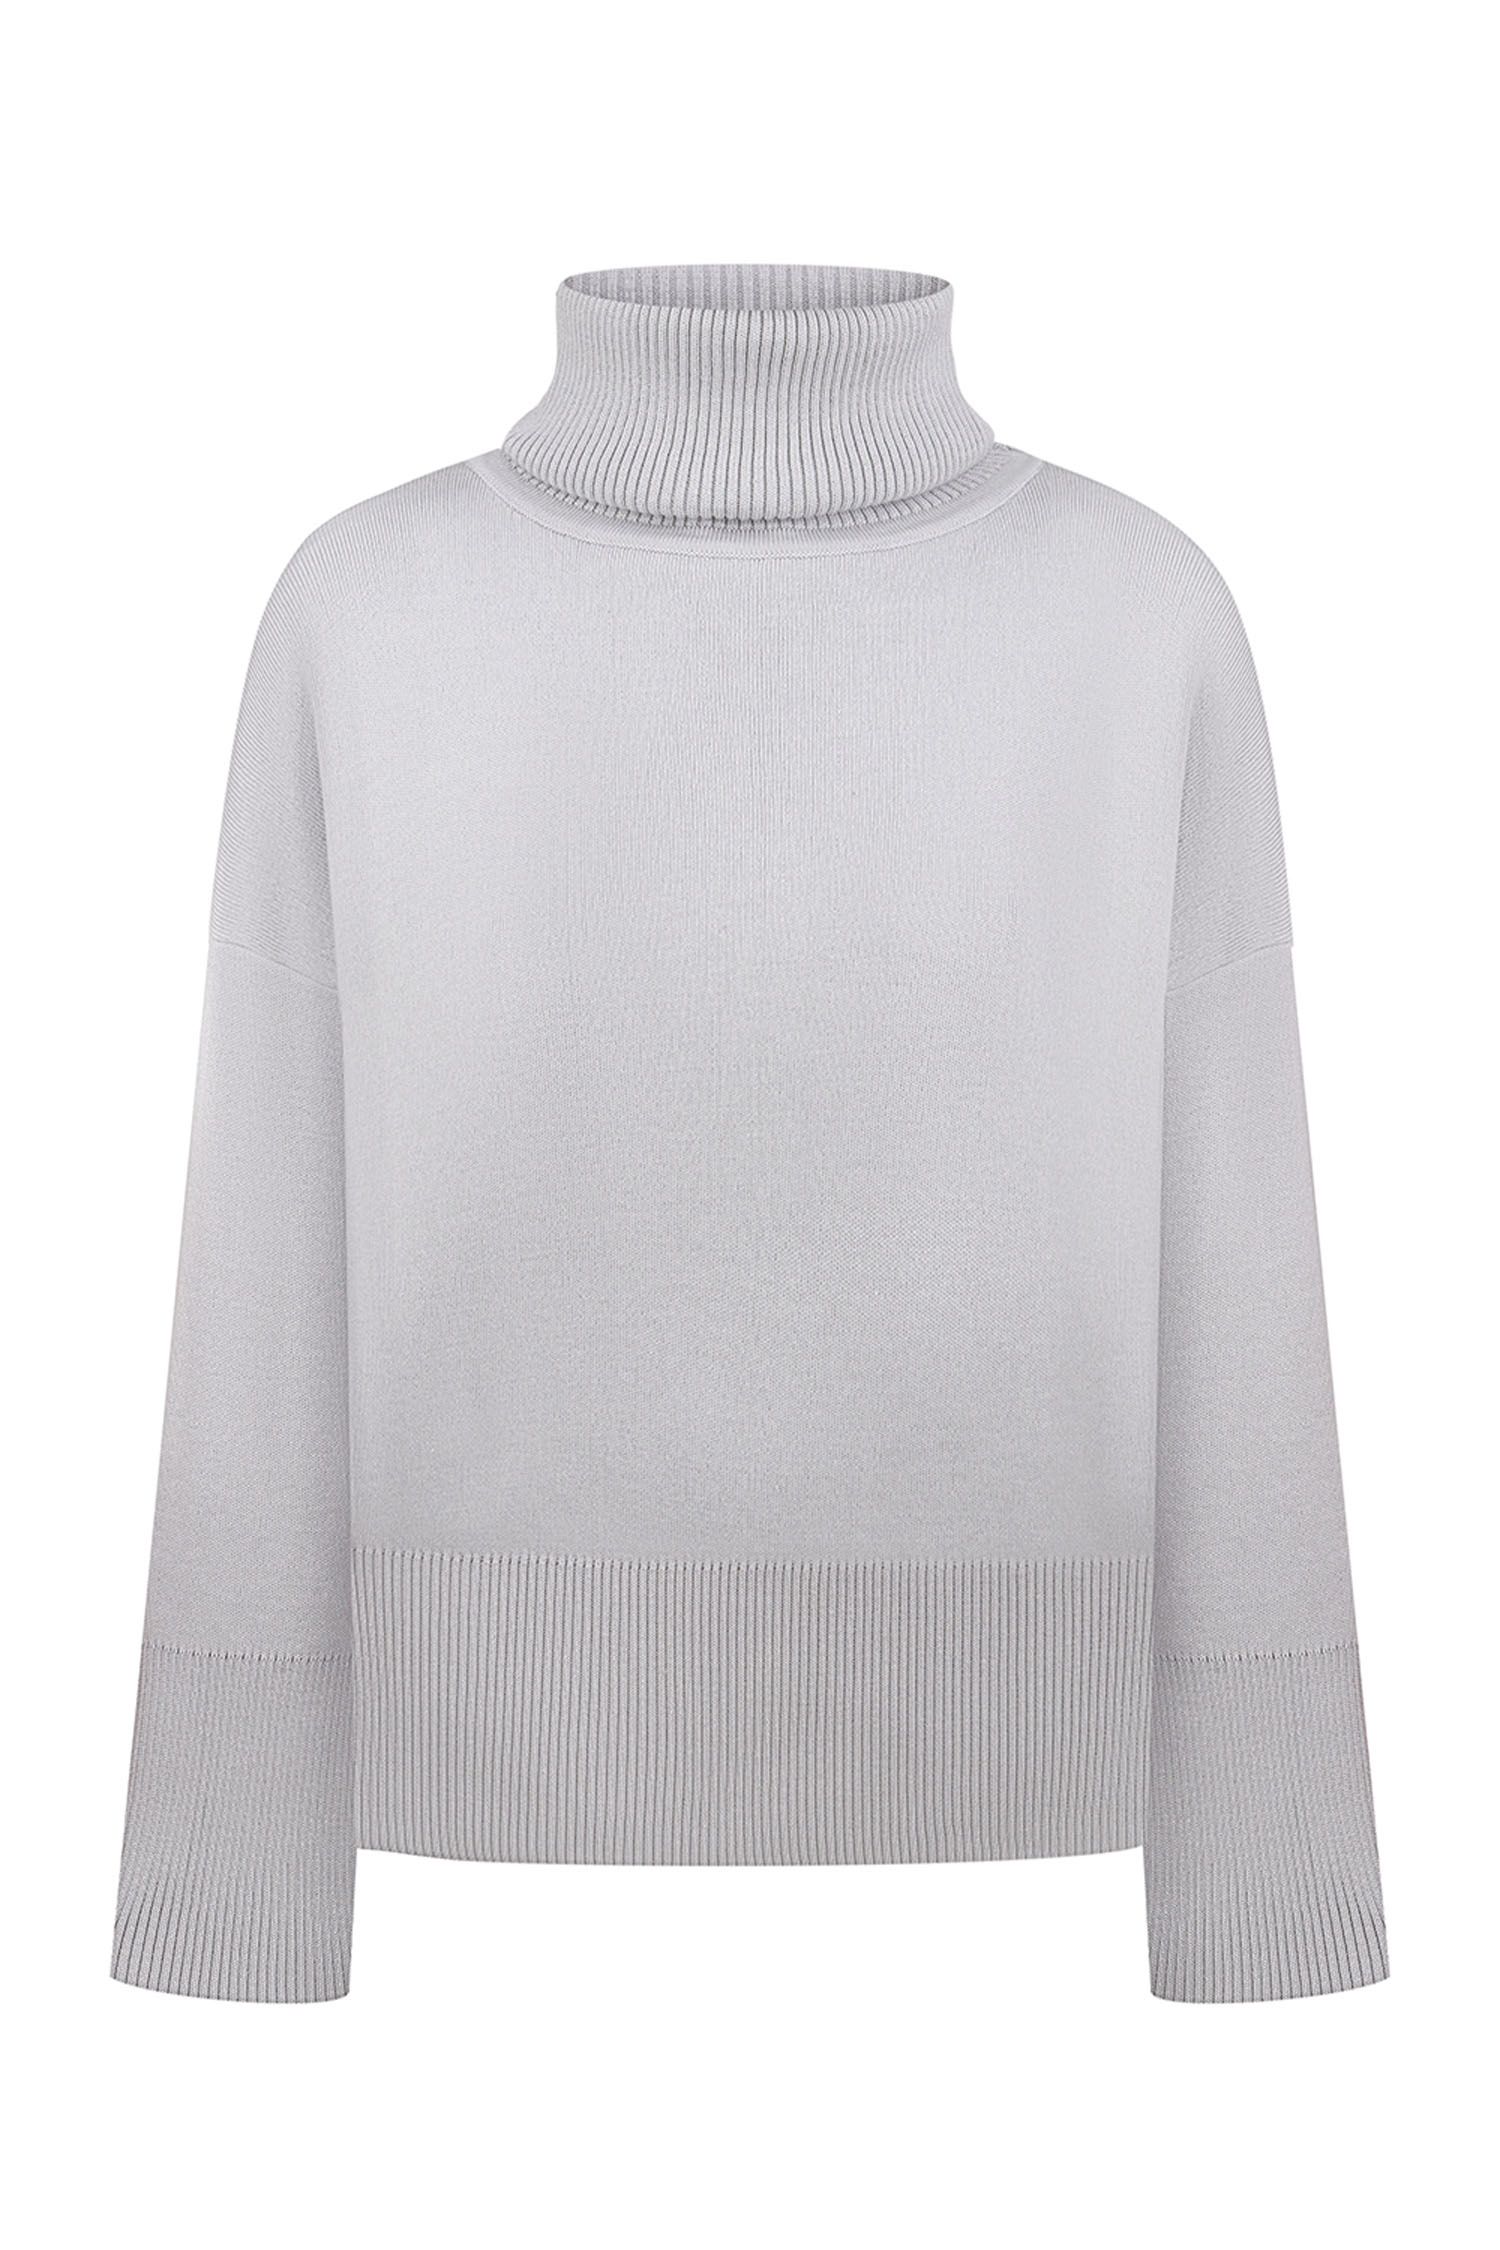 Трикотажний светр з об'ємною горловиною світло-сірий - THE LACE фото 245449